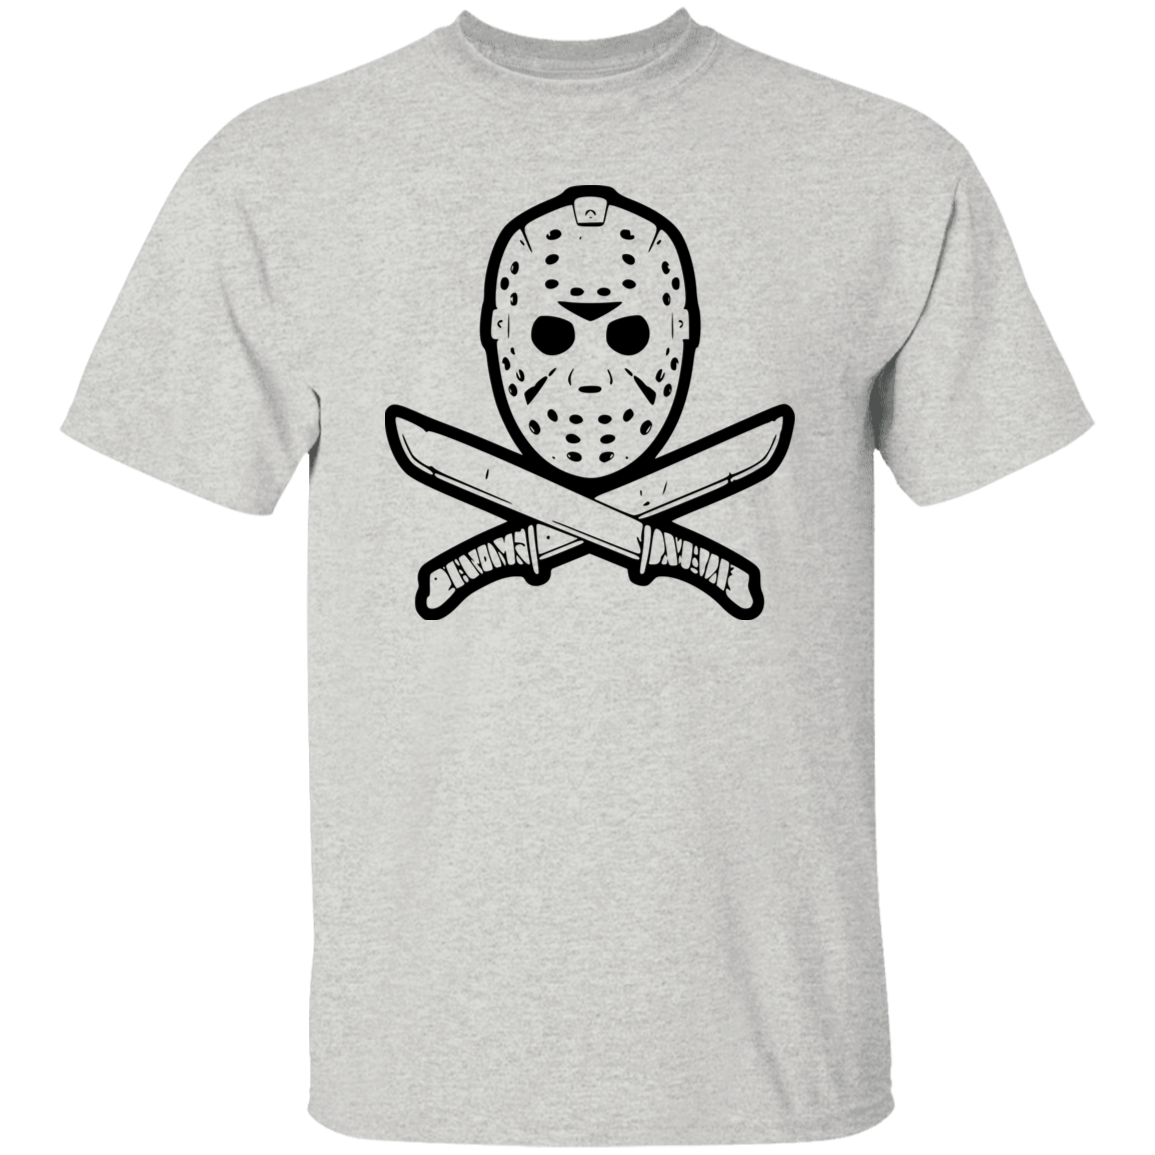 Jason 5.3 oz. T-Shirt